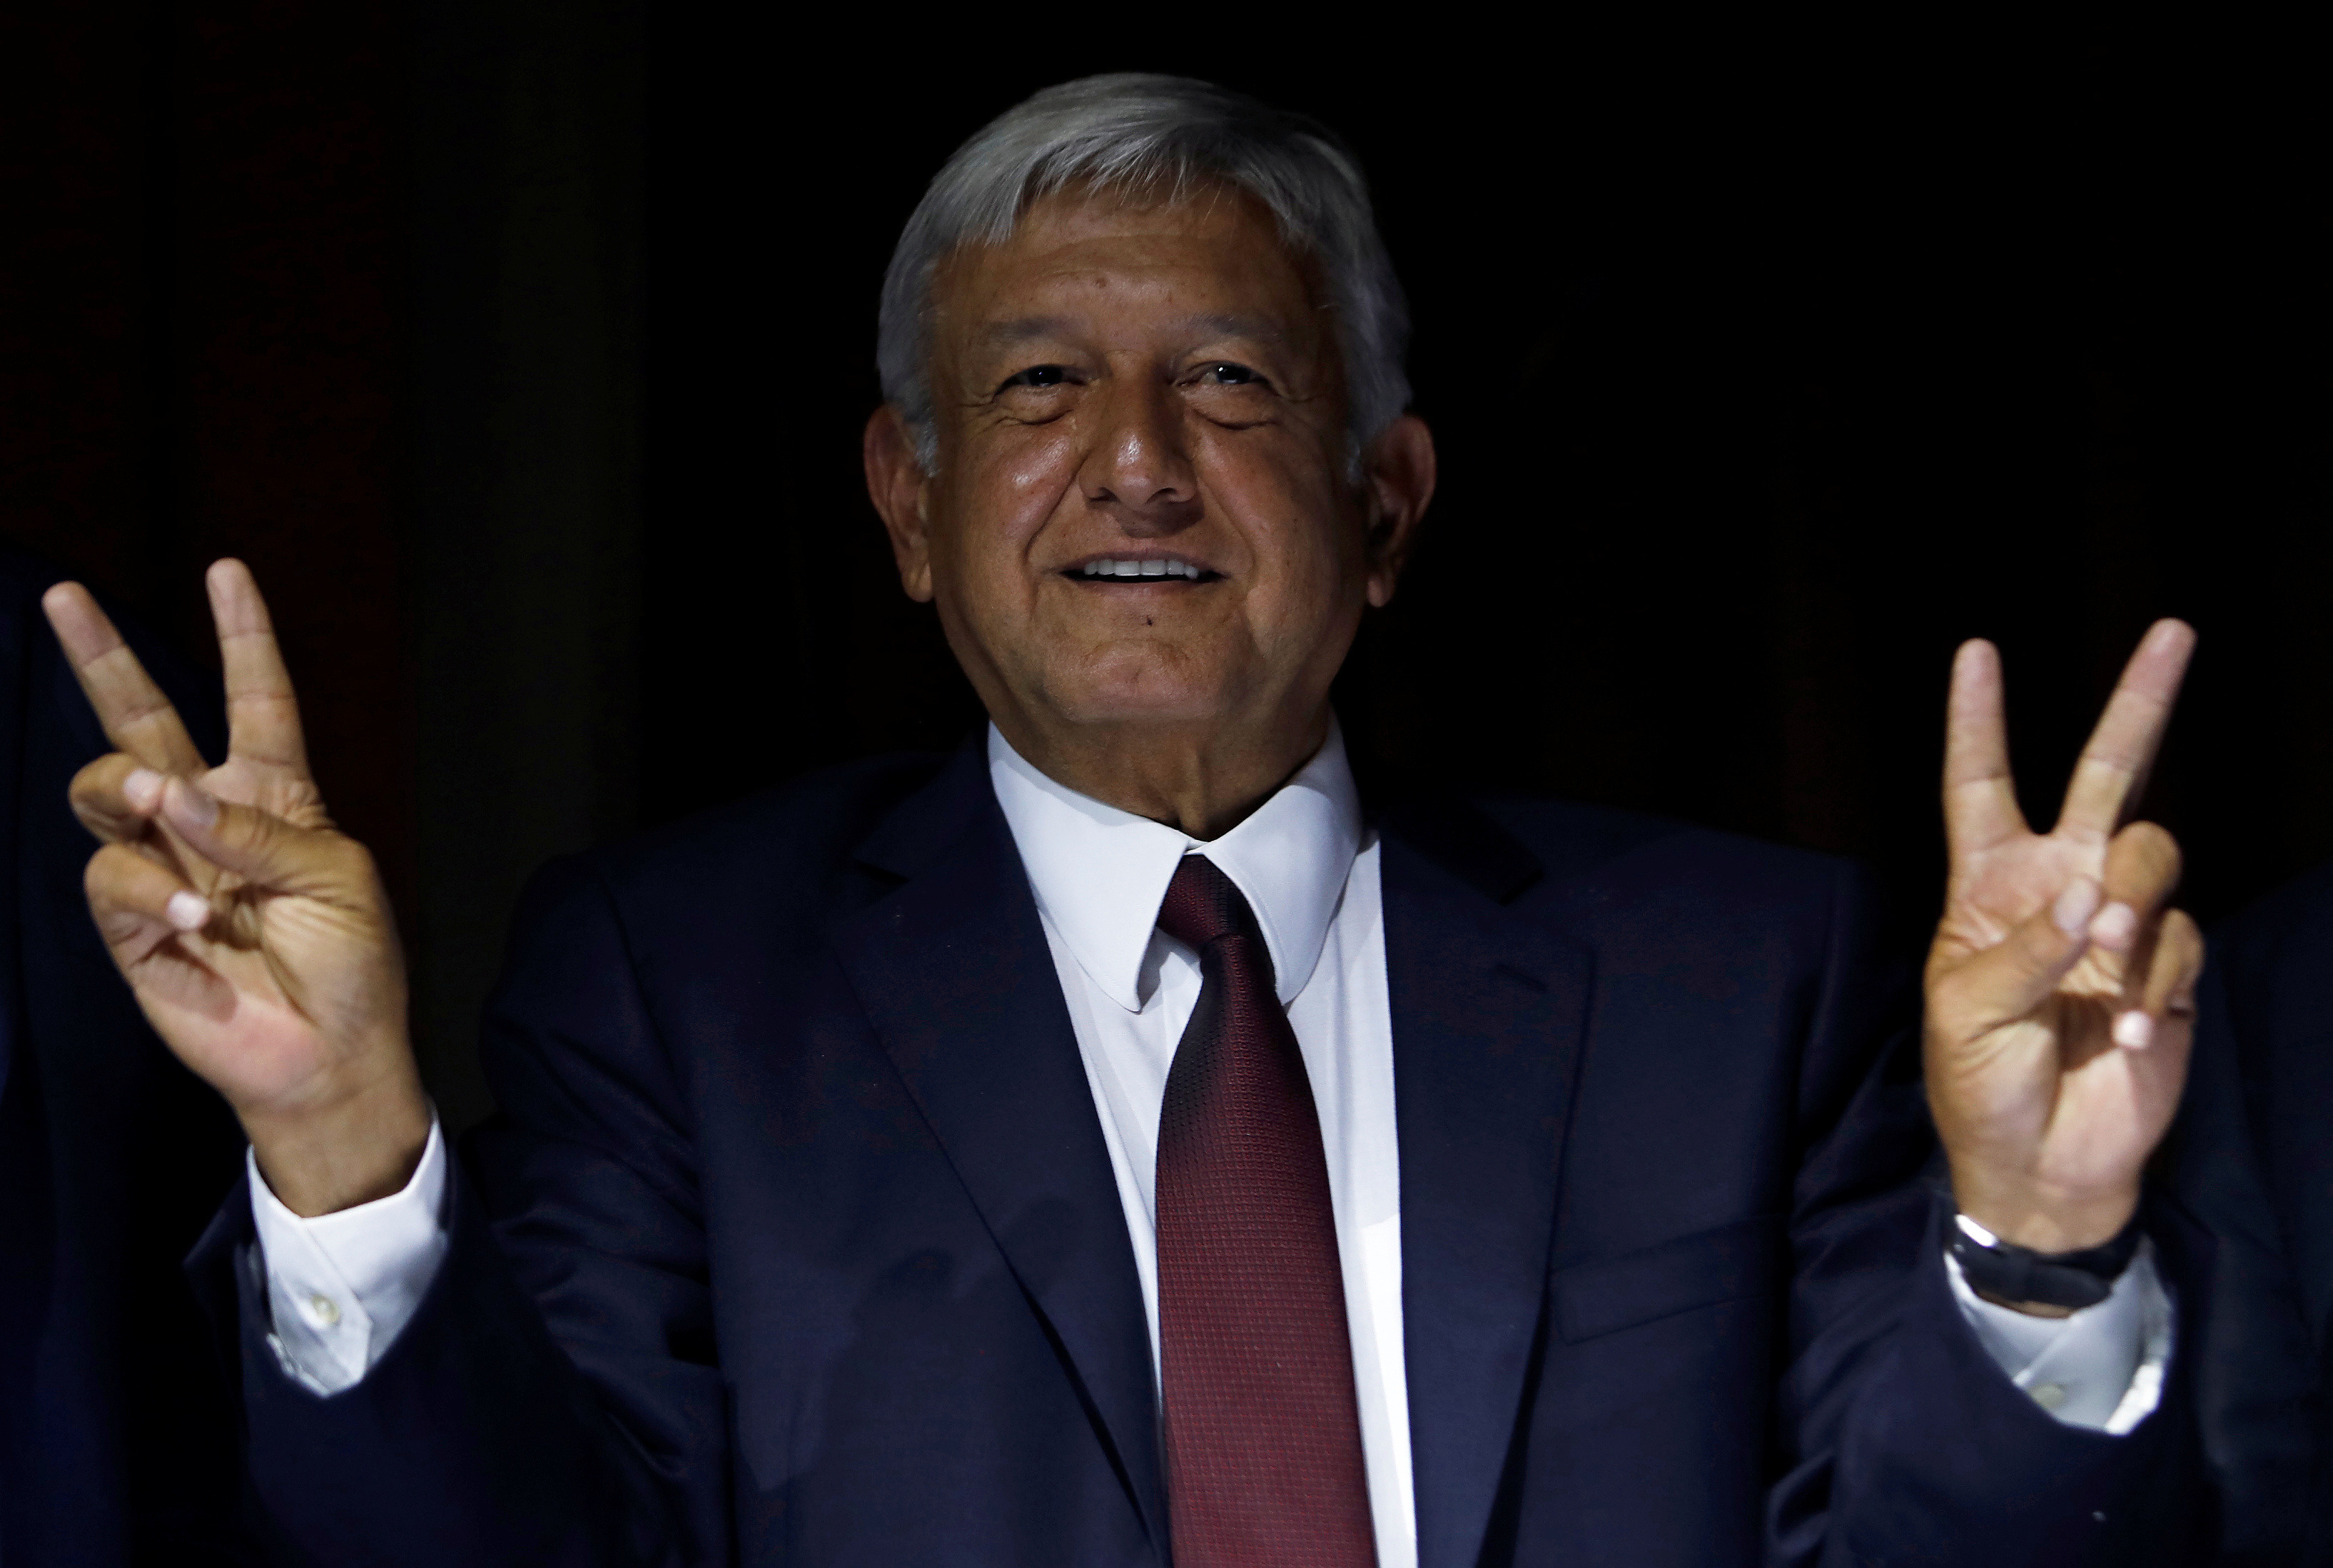 El presidente electo de México, Andrés Manuel López Obrador, hace un gesto después de una conferencia de prensa para anunciar a Marcelo Ebrard como su candidato para ministro de relaciones exteriores, en Ciudad de México, México